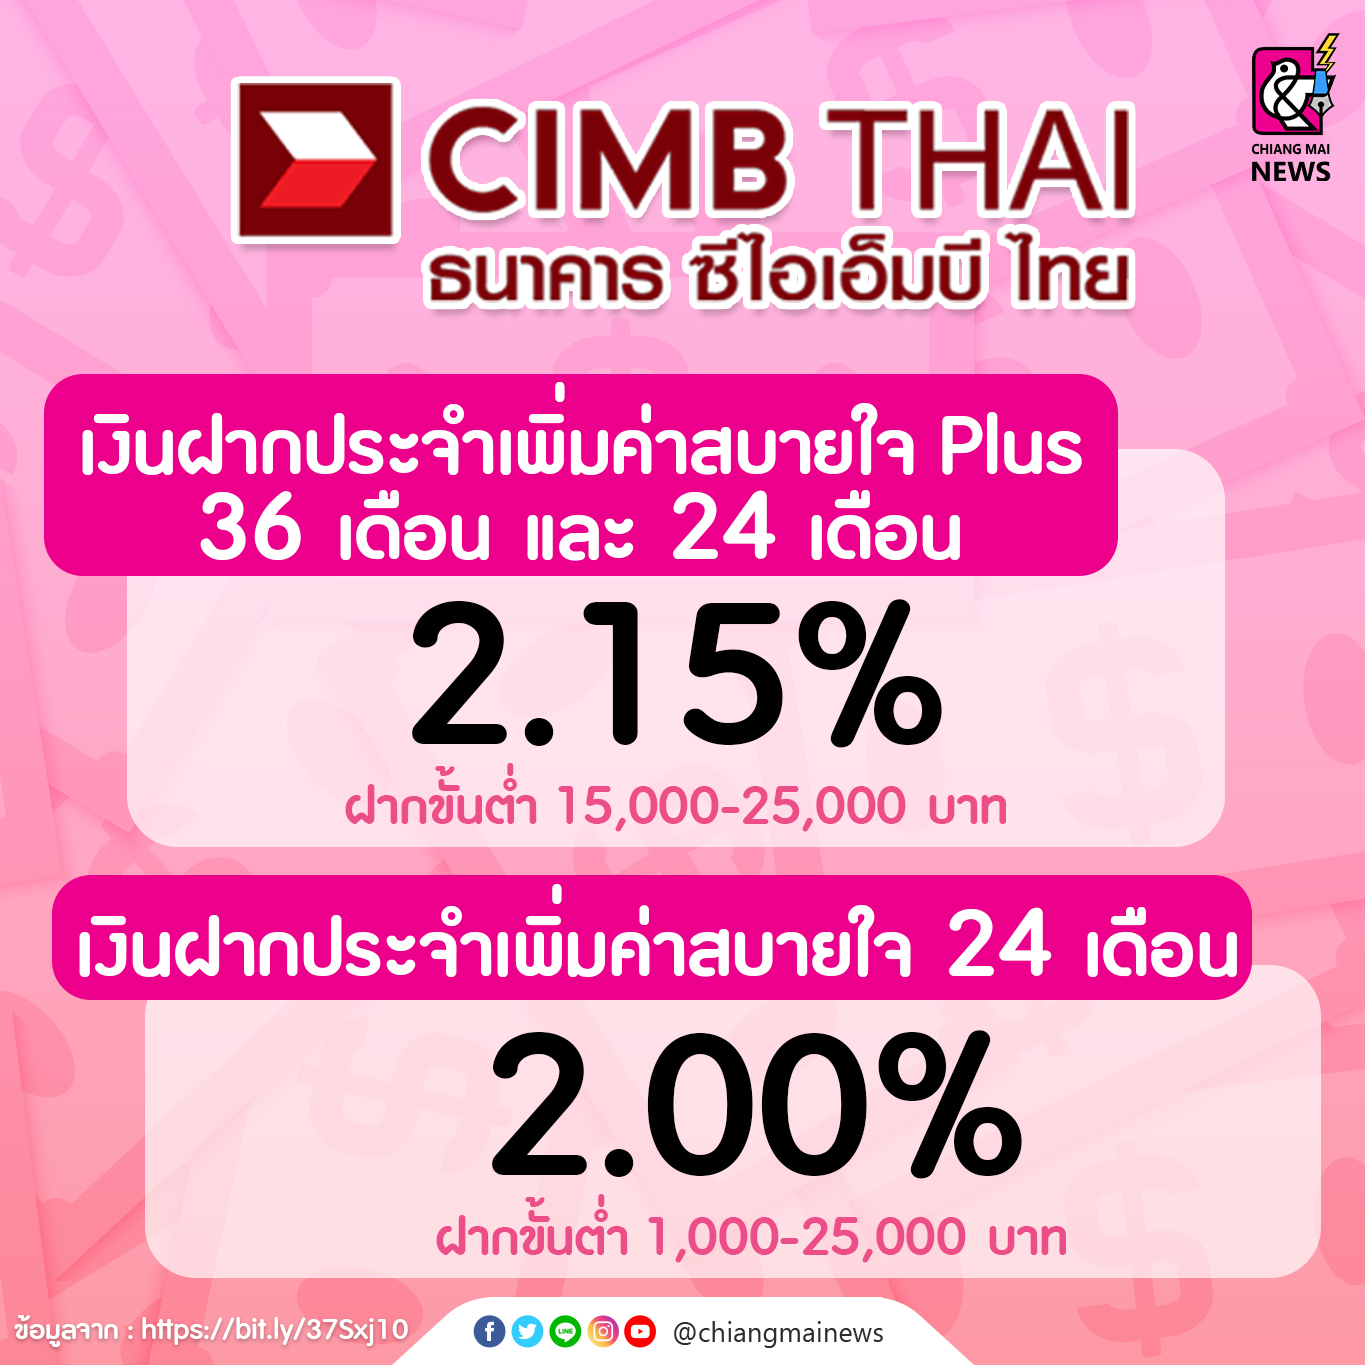 ตัวช่วยเรื่องเงินออมกับรวมเงินฝากประจำ ดอกเบี้ยสูง ไม่เสียภาษี! - Chiang  Mai News